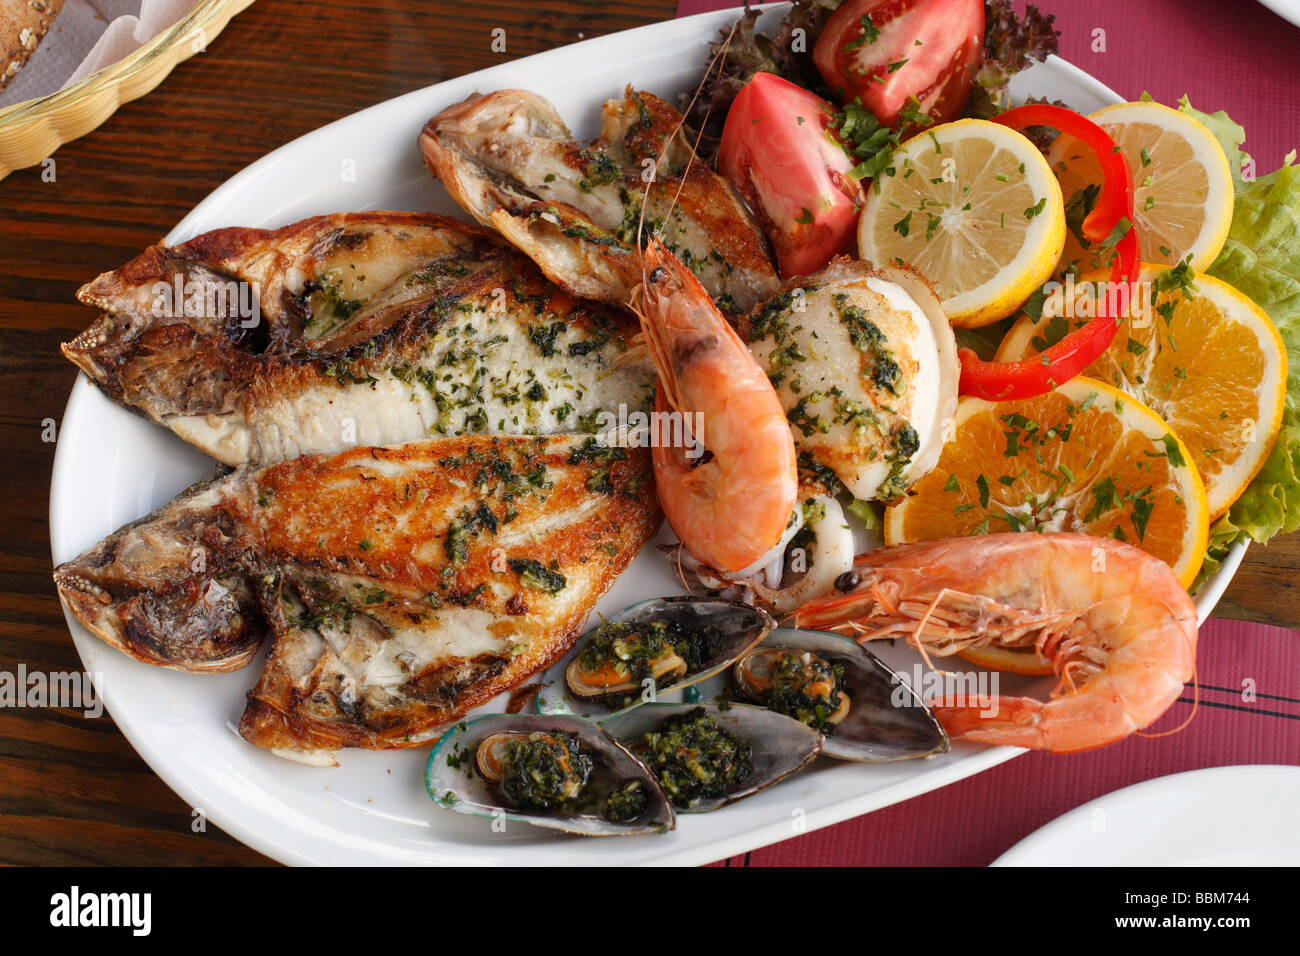 Mixed fish platter, La Palma, Canary Islands, Spain Stock Photo